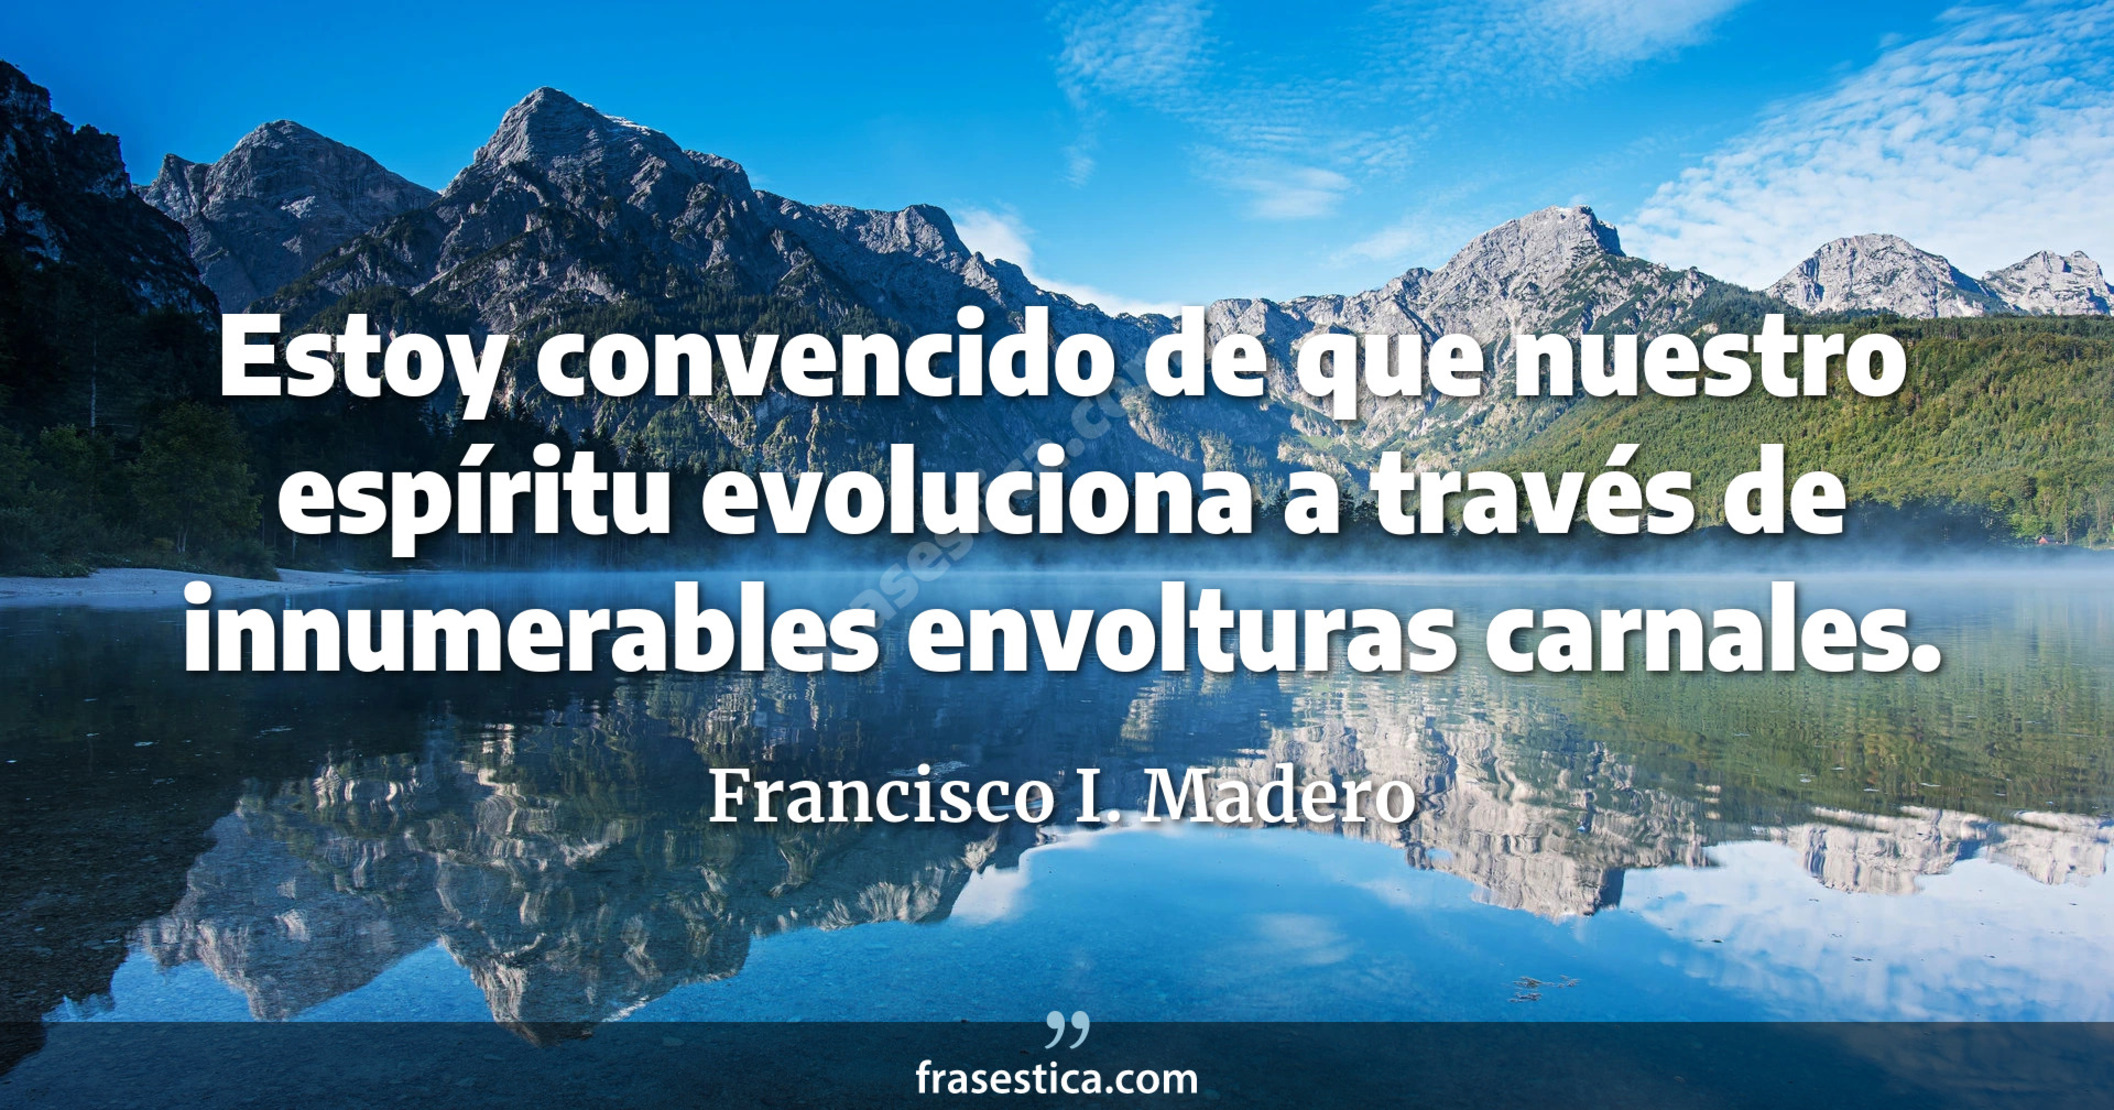 Estoy convencido de que nuestro espíritu evoluciona a través de innumerables envolturas carnales. - Francisco I. Madero